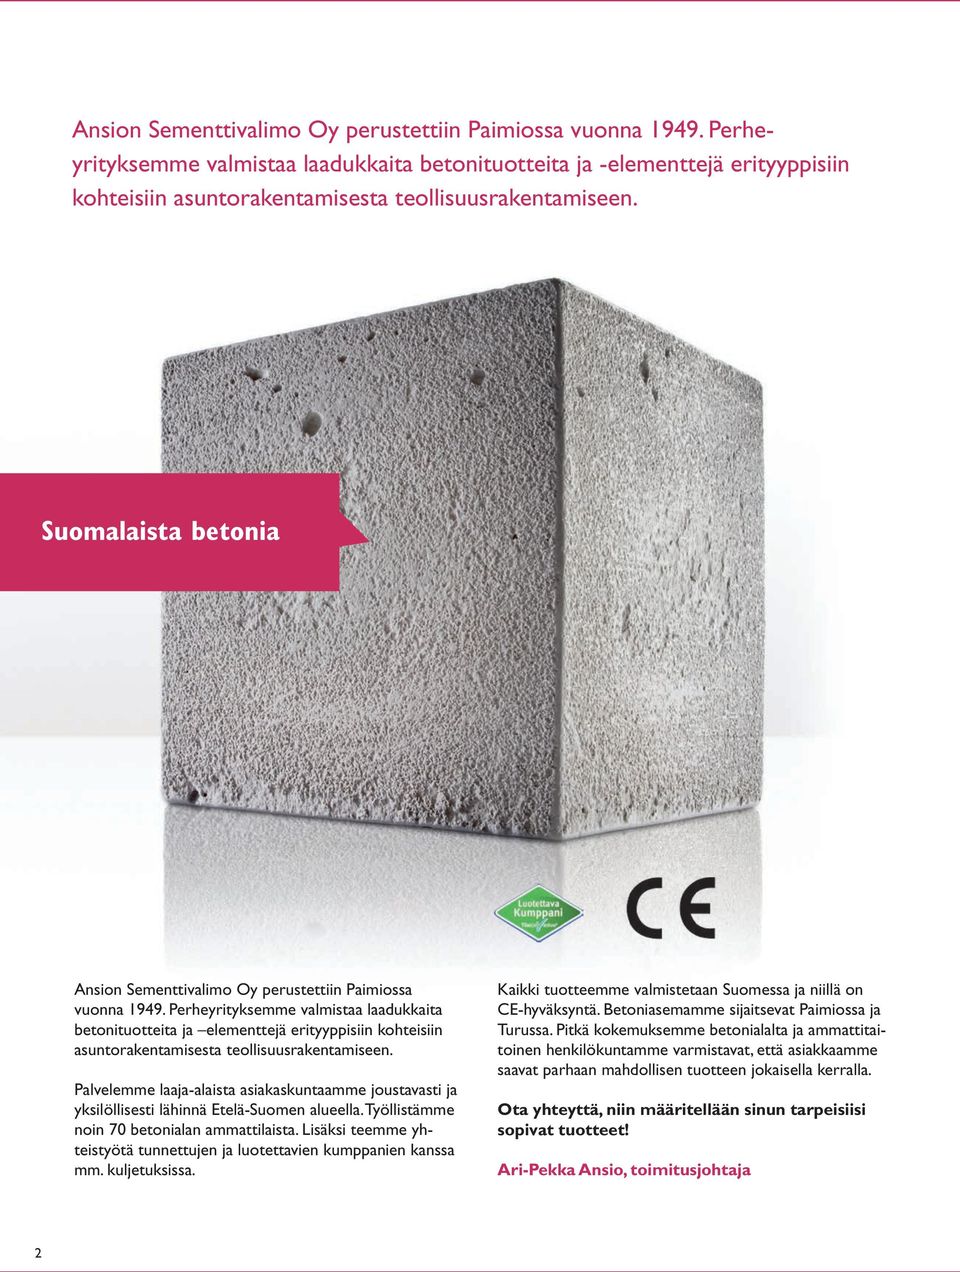 Suomalaista betonia  Perheyrityksemme valmistaa laadukkaita betonituotteita ja elementtejä erityyppisiin kohteisiin asuntorakentamisesta teollisuusrakentamiseen.